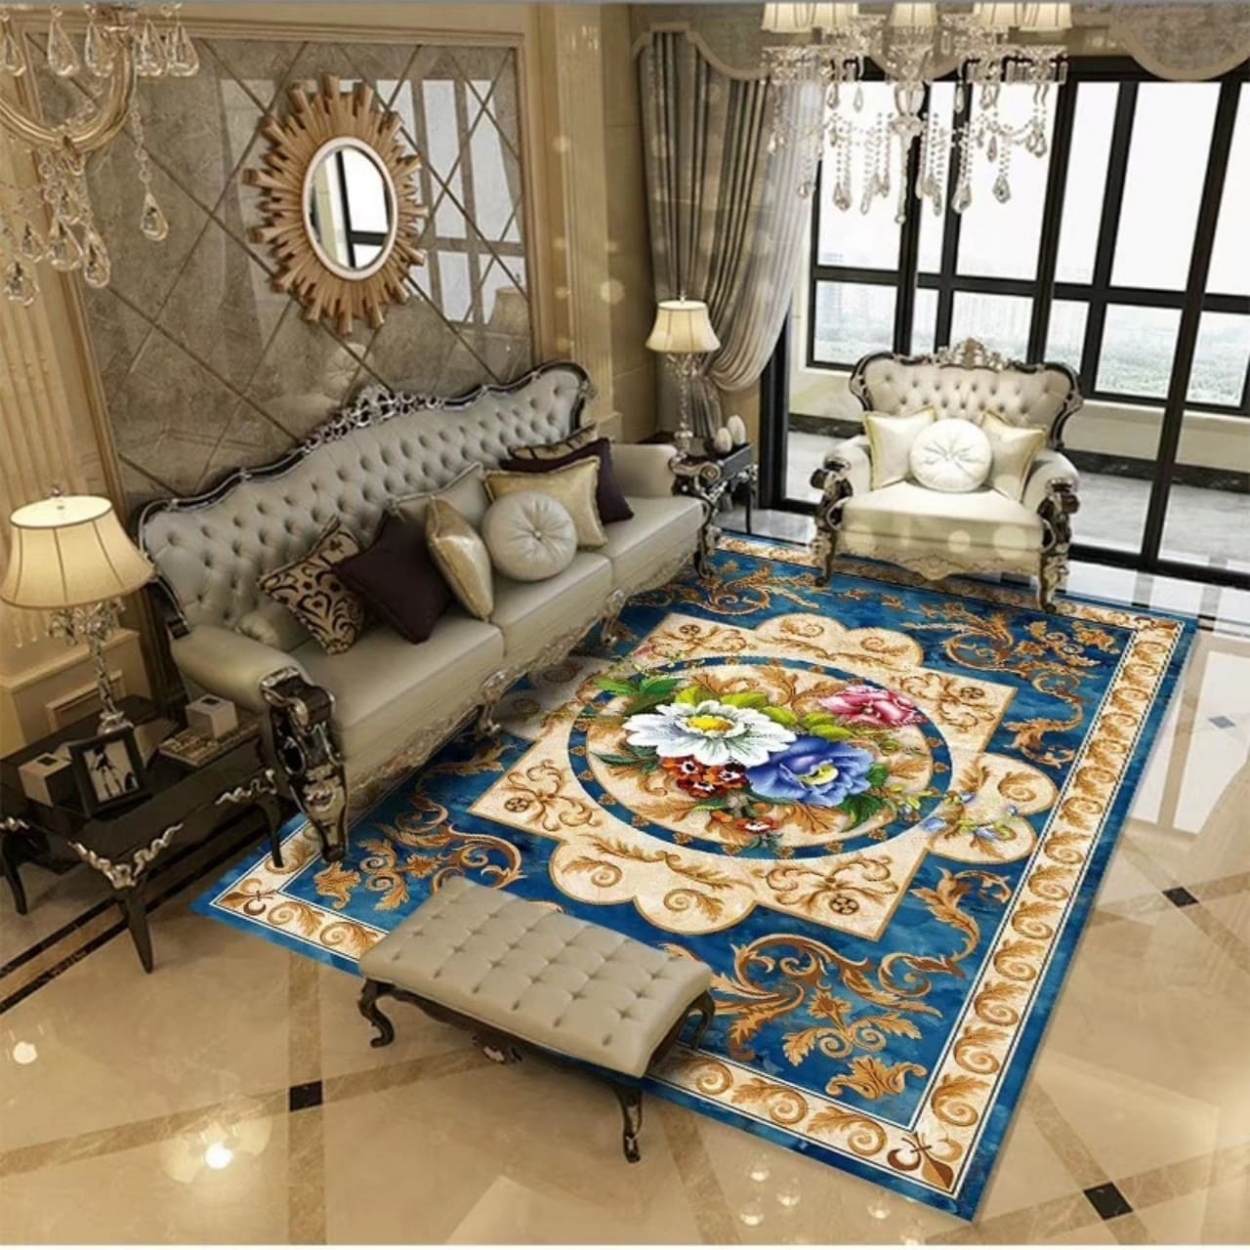 Thảm trải sàn trang trí phòng khách được làm từ nhiều chất liệu đặc sắc khác nhau (thảm da, thảm lông xù, thảm phòng khách chung cư...) phù hợp với từng phong cách kiến trúc nhất định.